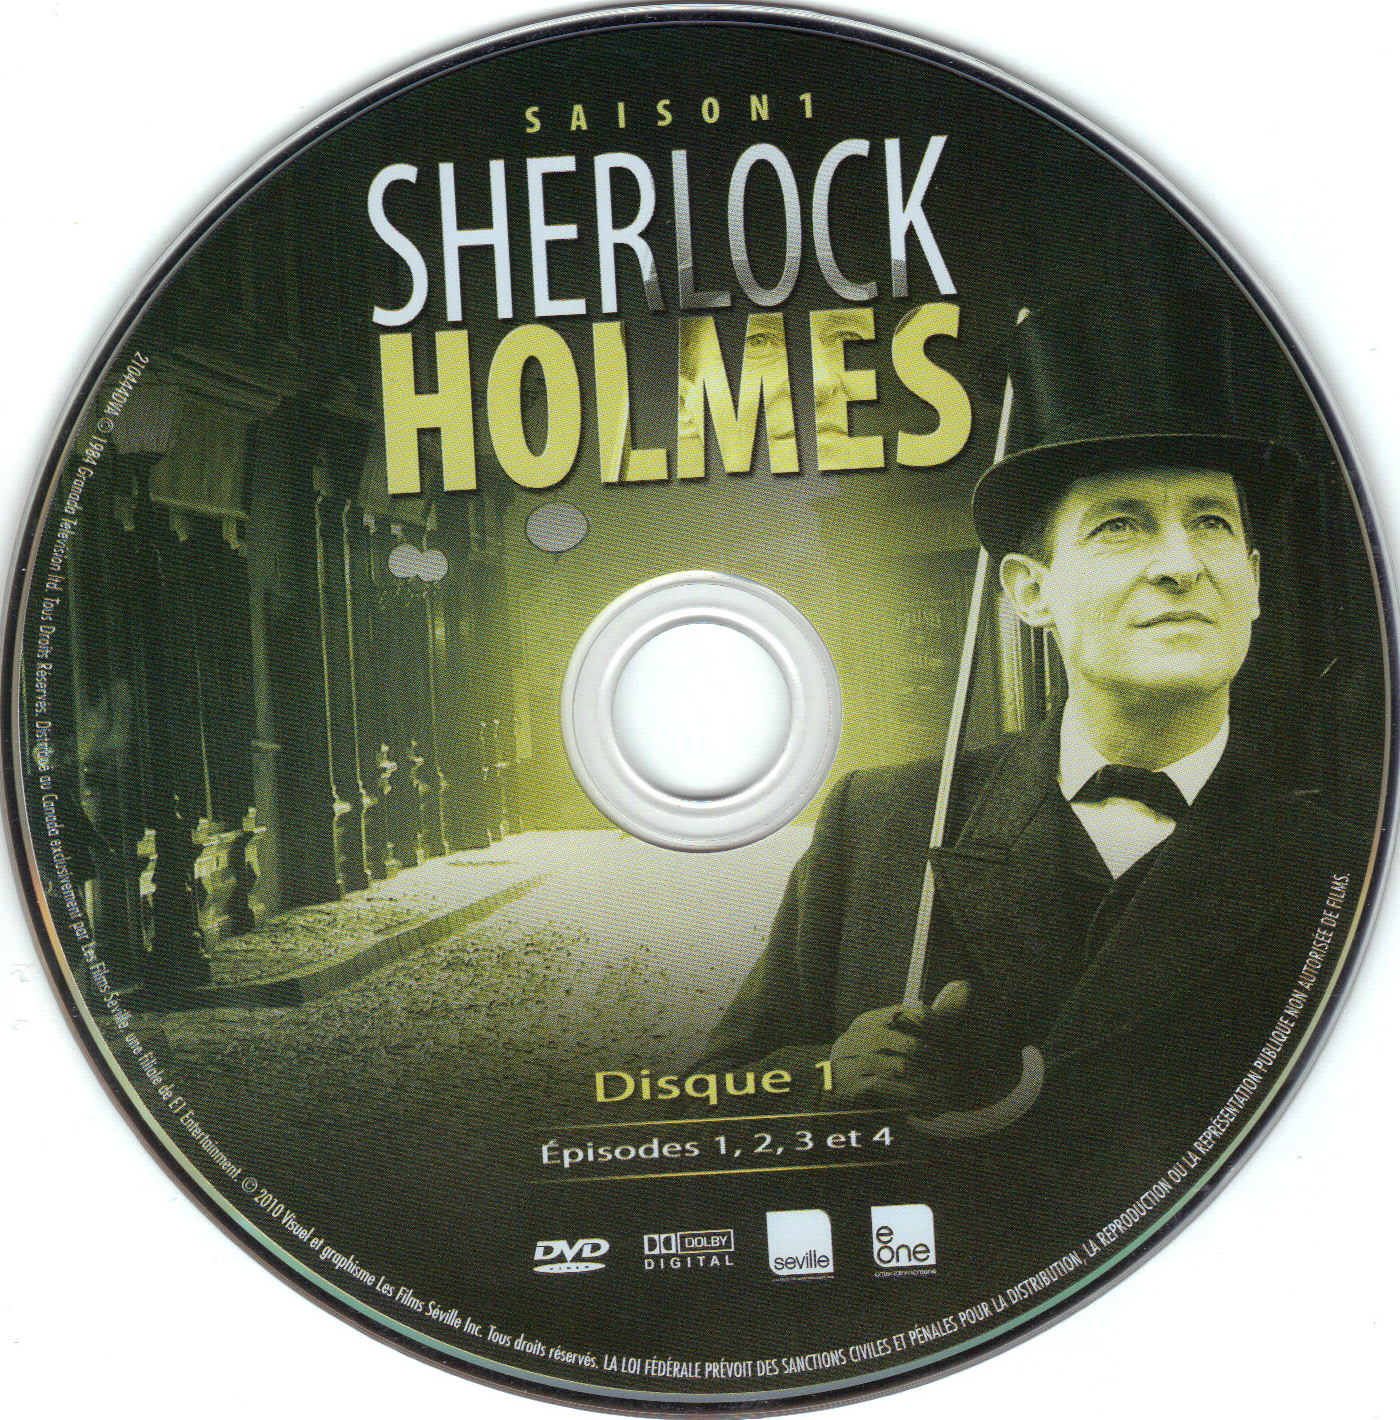 Sherlock Holmes Saison 1 DISC 1